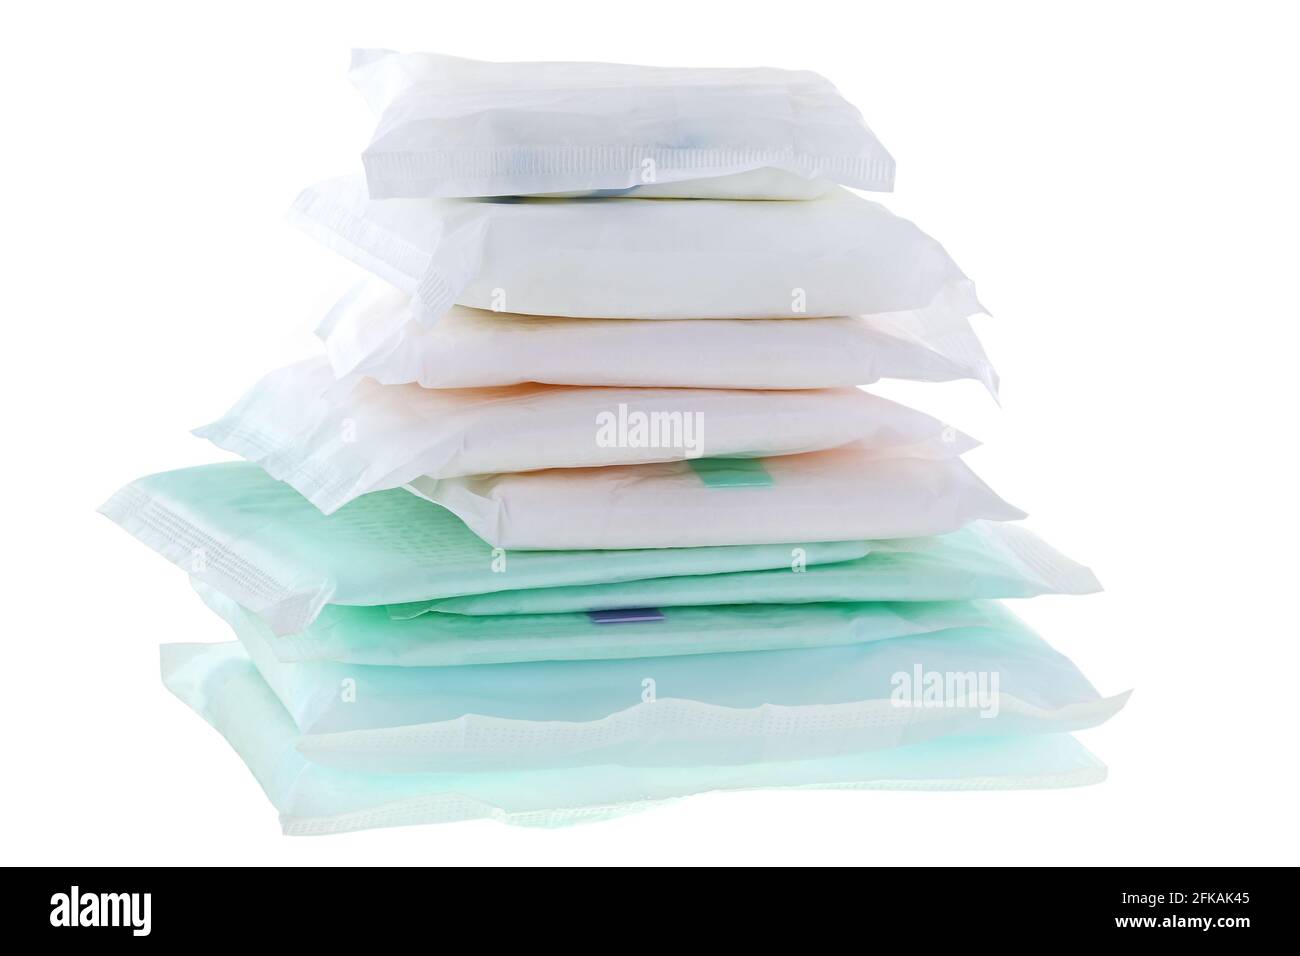 Ein Haufen von verschiedenen Typen und Größen von Sanitärservietten (Badetuch, Damenbinden, Menstruationskissen) auf Weiß isoliert Stockfoto